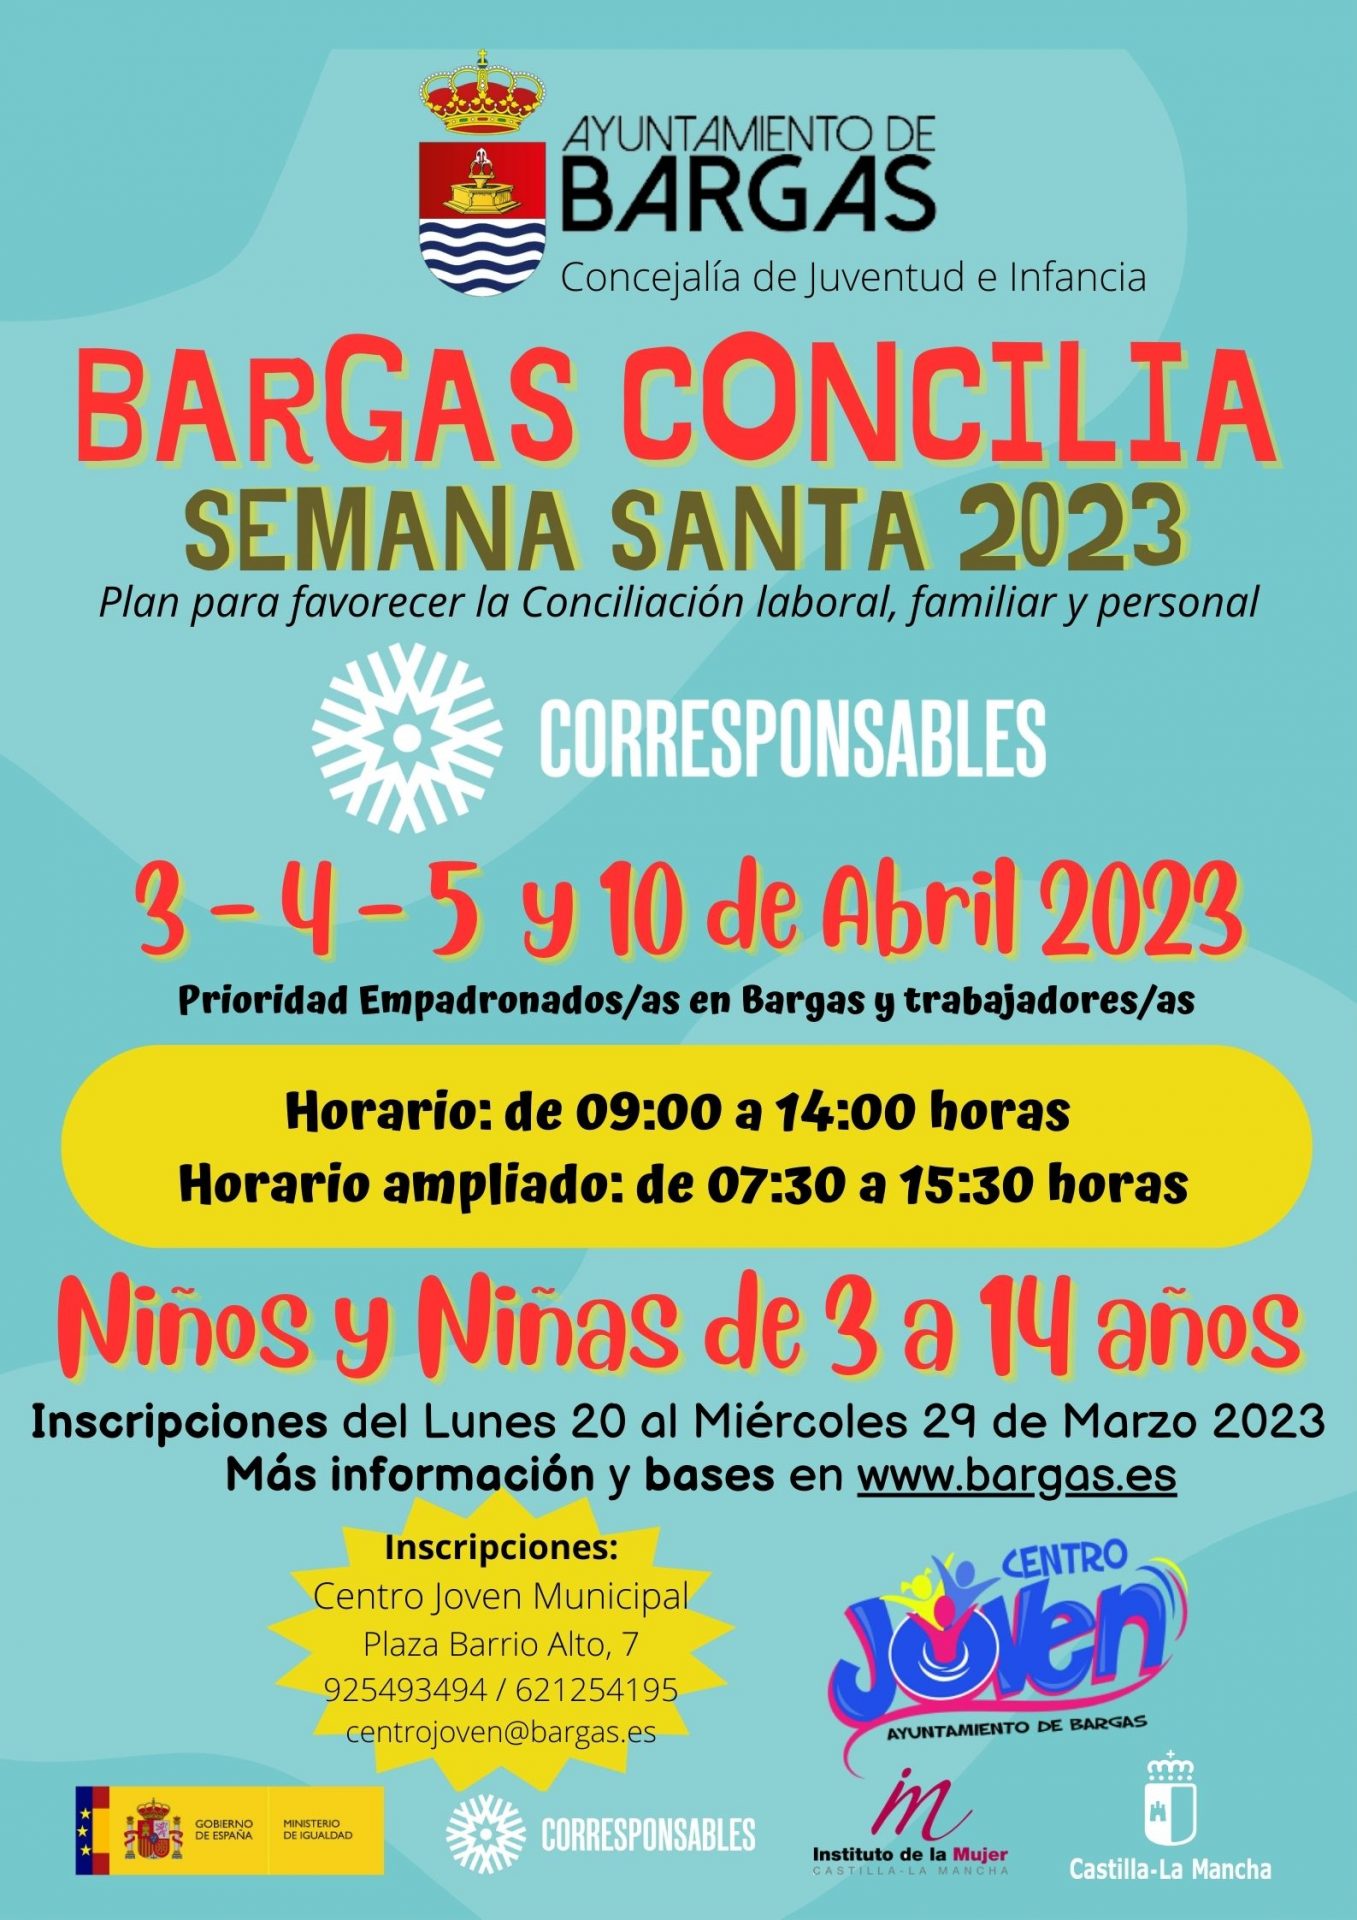 Bargas Concilia – Semana Santa 2023